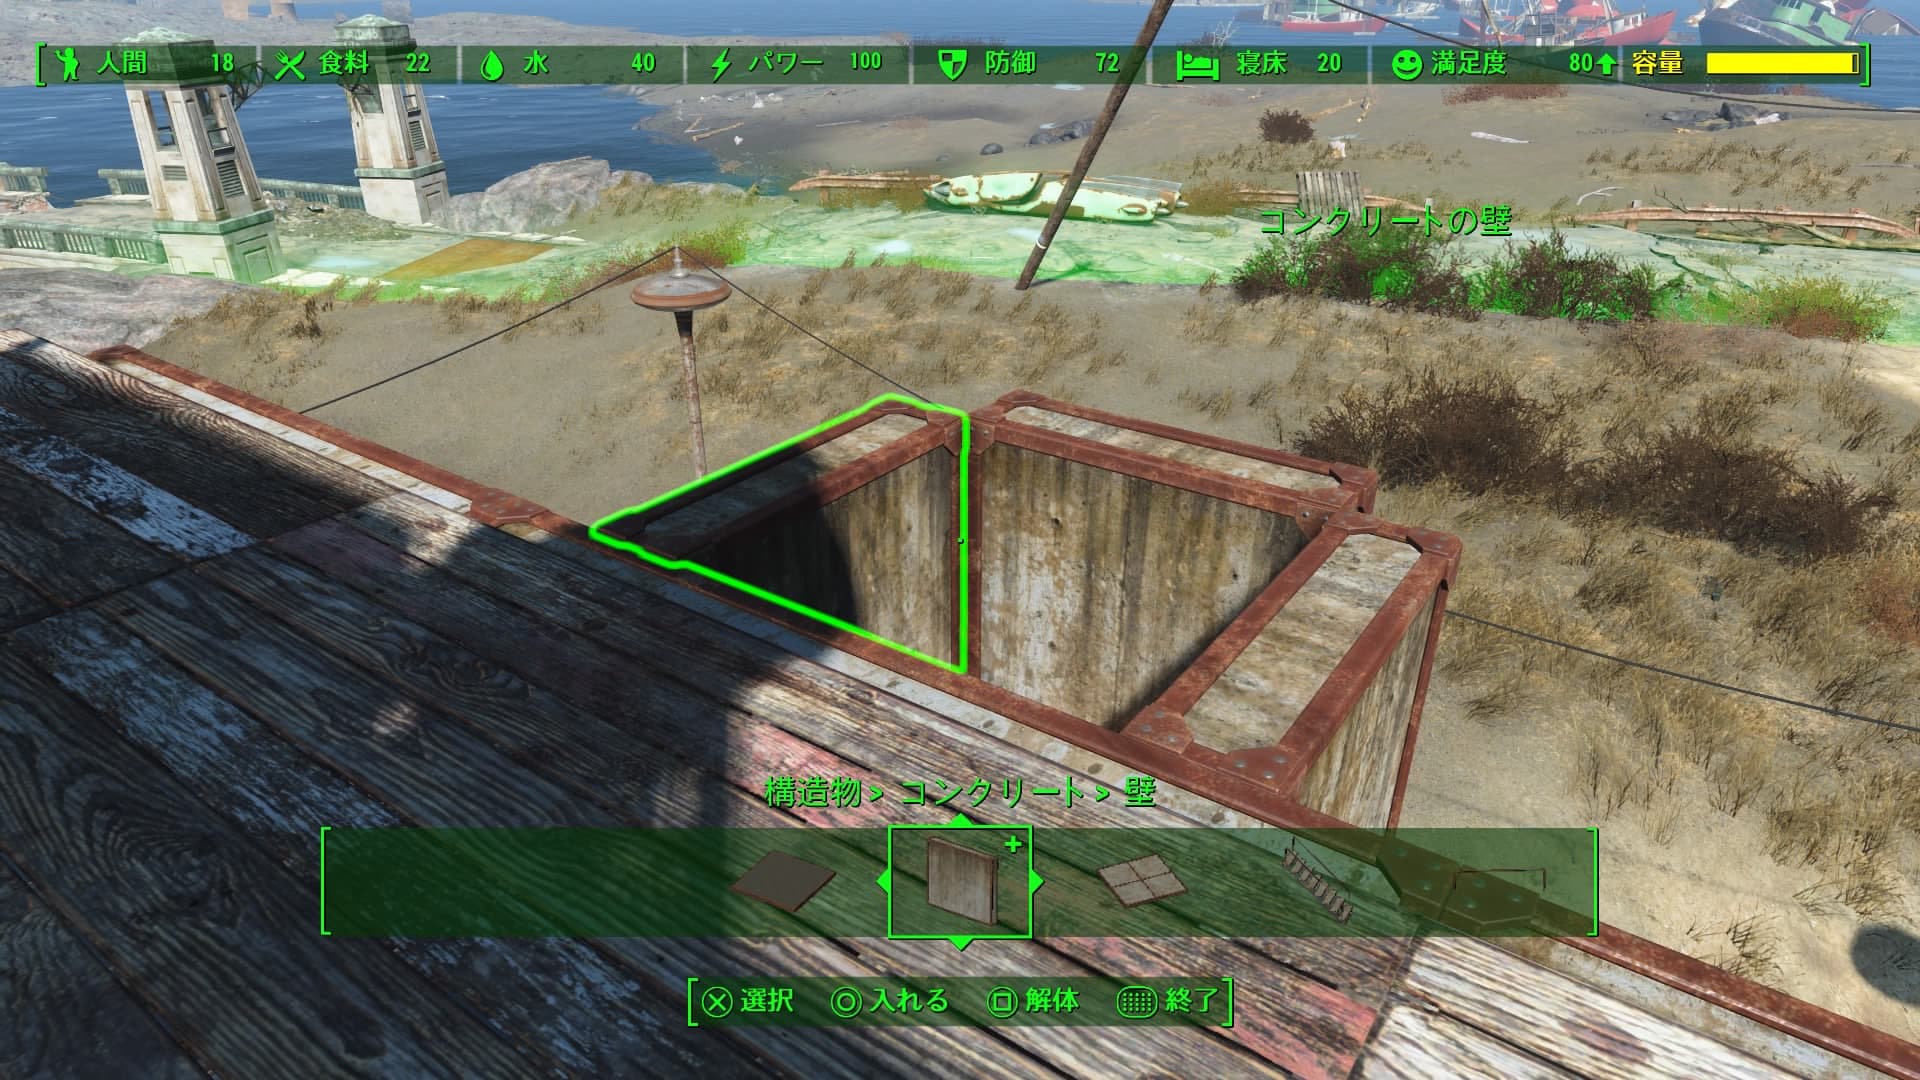 Fallout4 クラフト 家に暖炉と煙突を作りました キャンプファイヤーとコンクリートの床 壁を使います あまげー